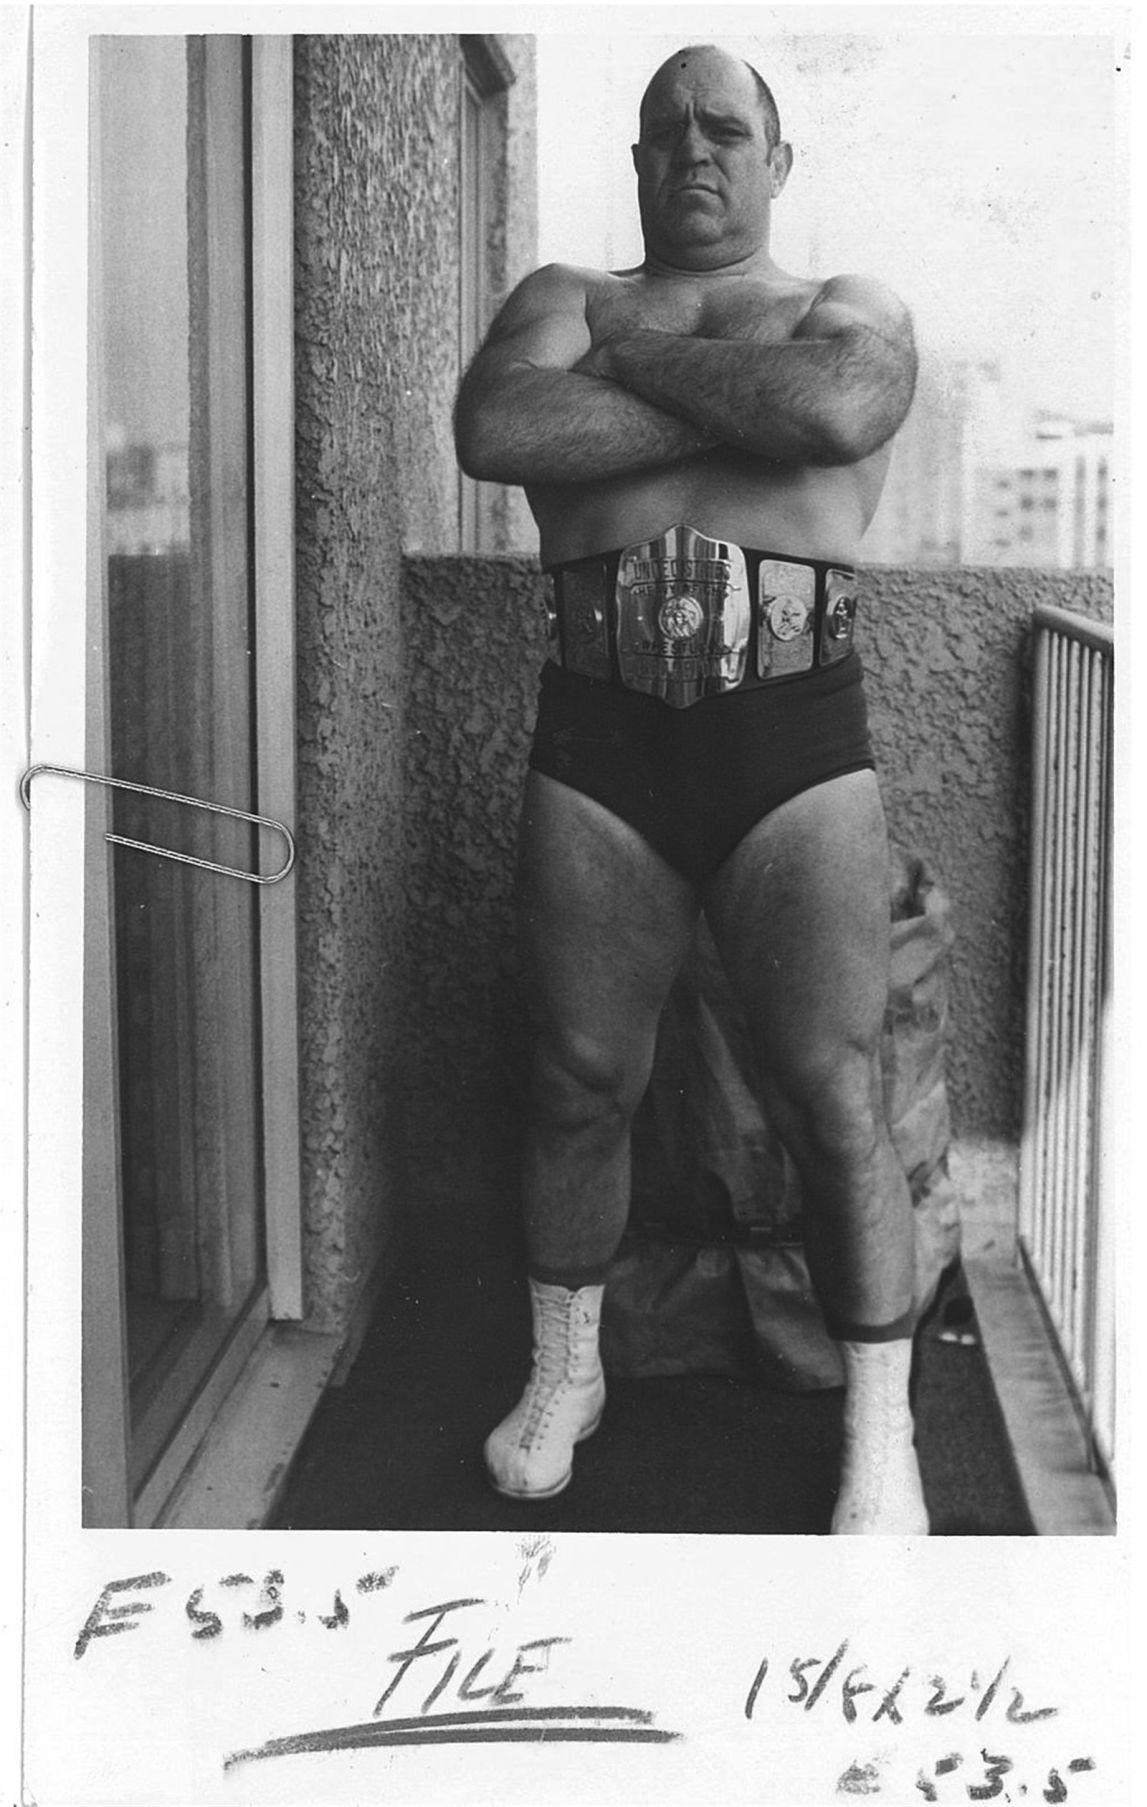 Remembering wrestler Dick Beyer